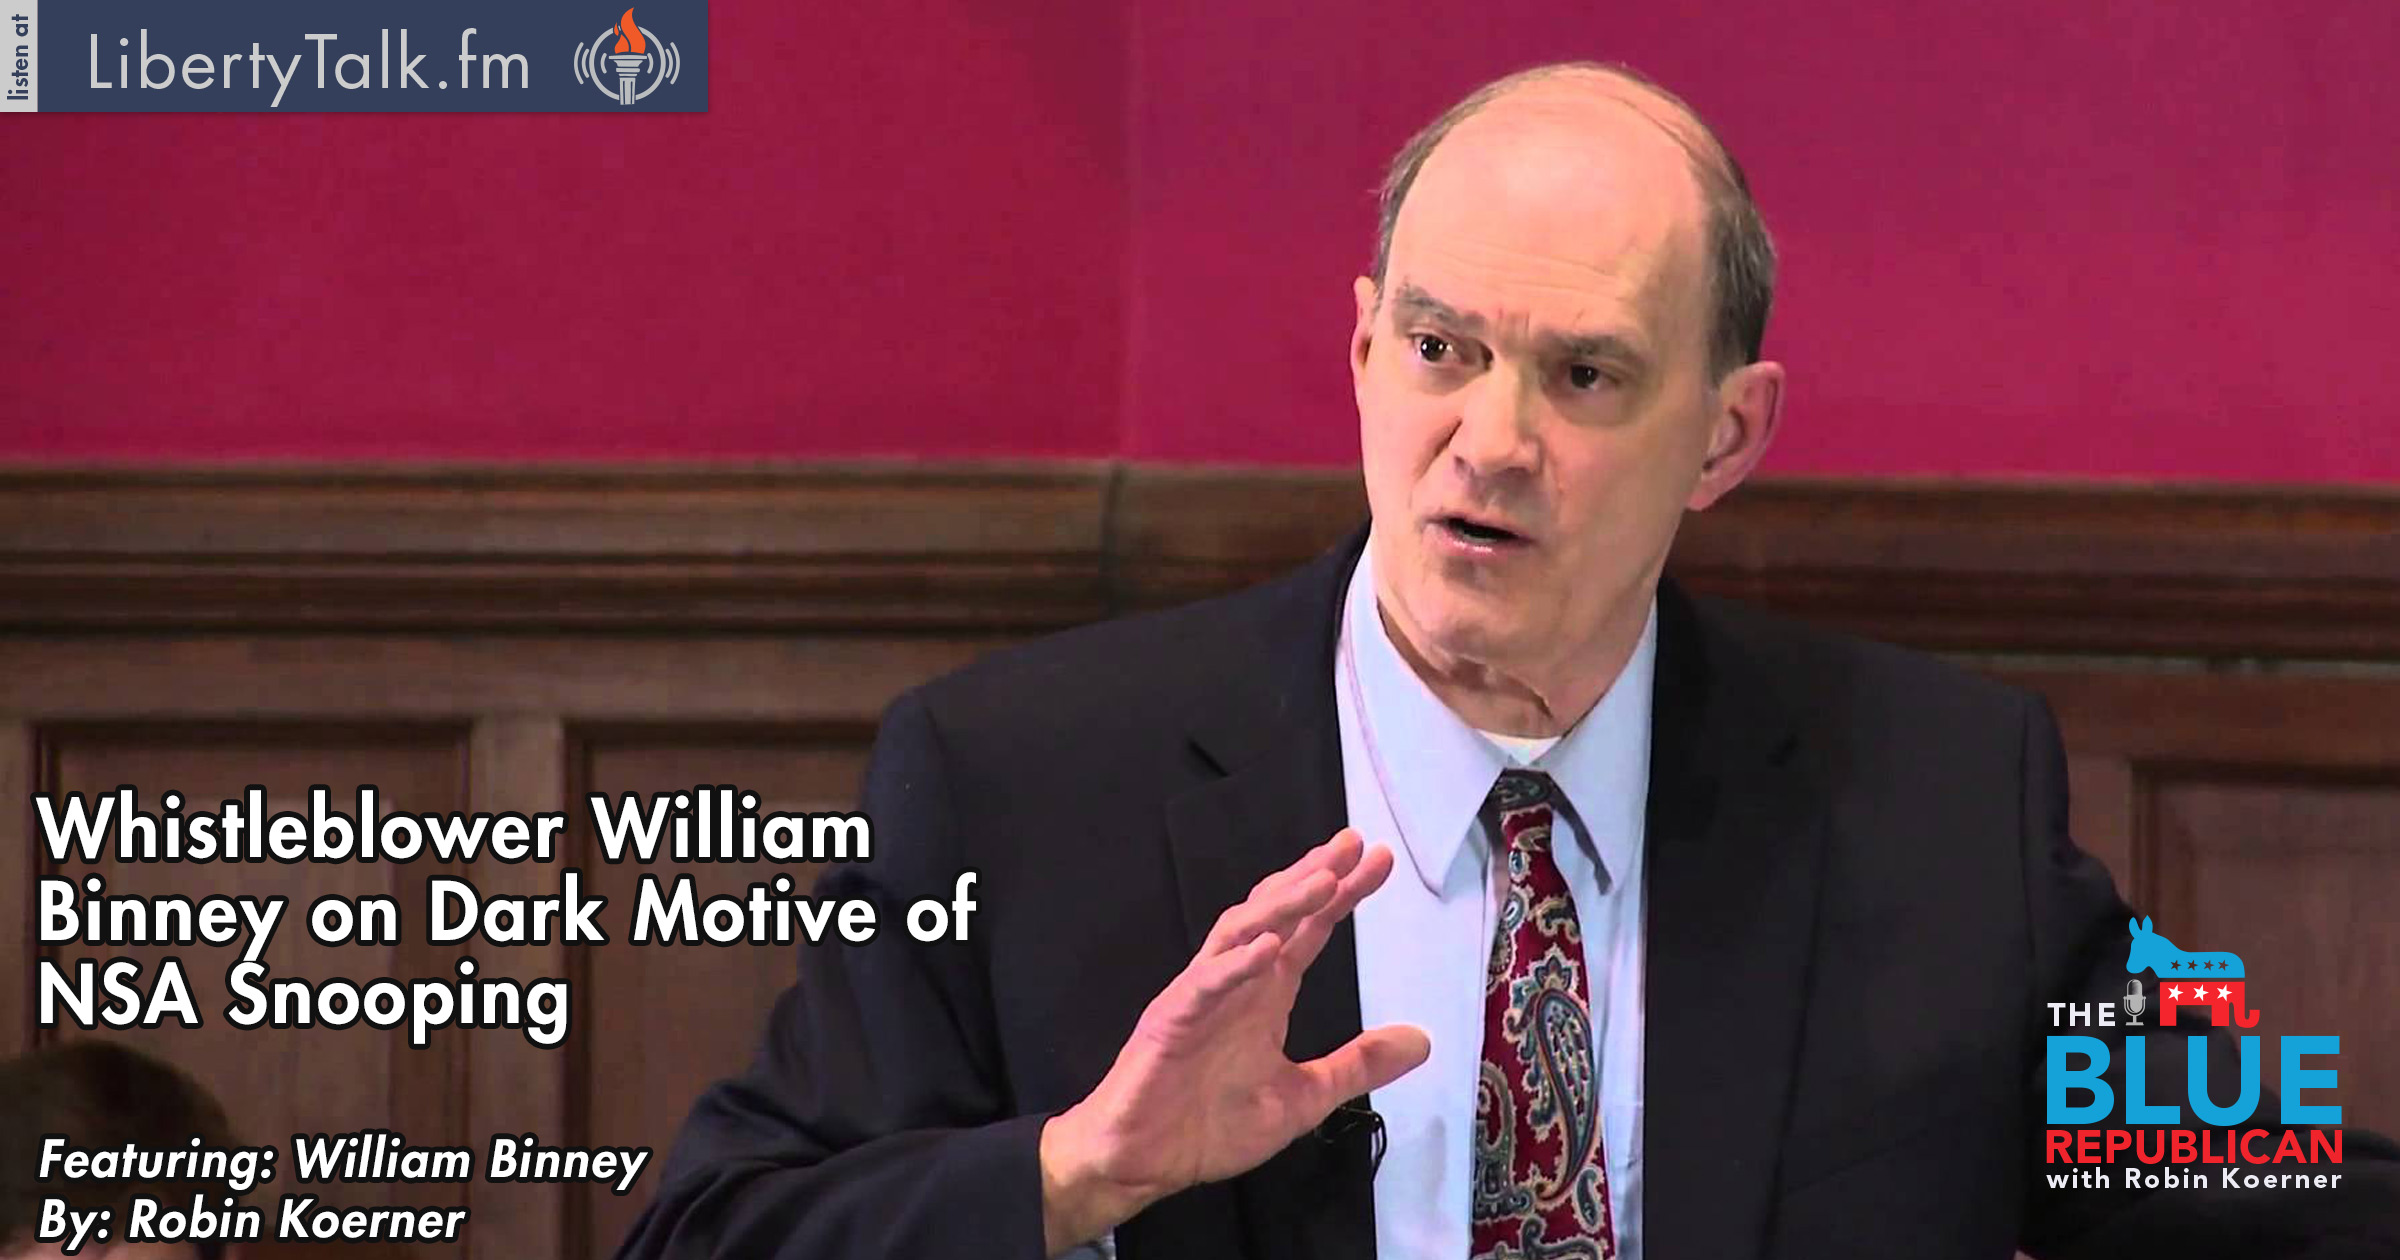 Whislteblower William Binney on NSA Dark Motivations behind Spying FEATURED